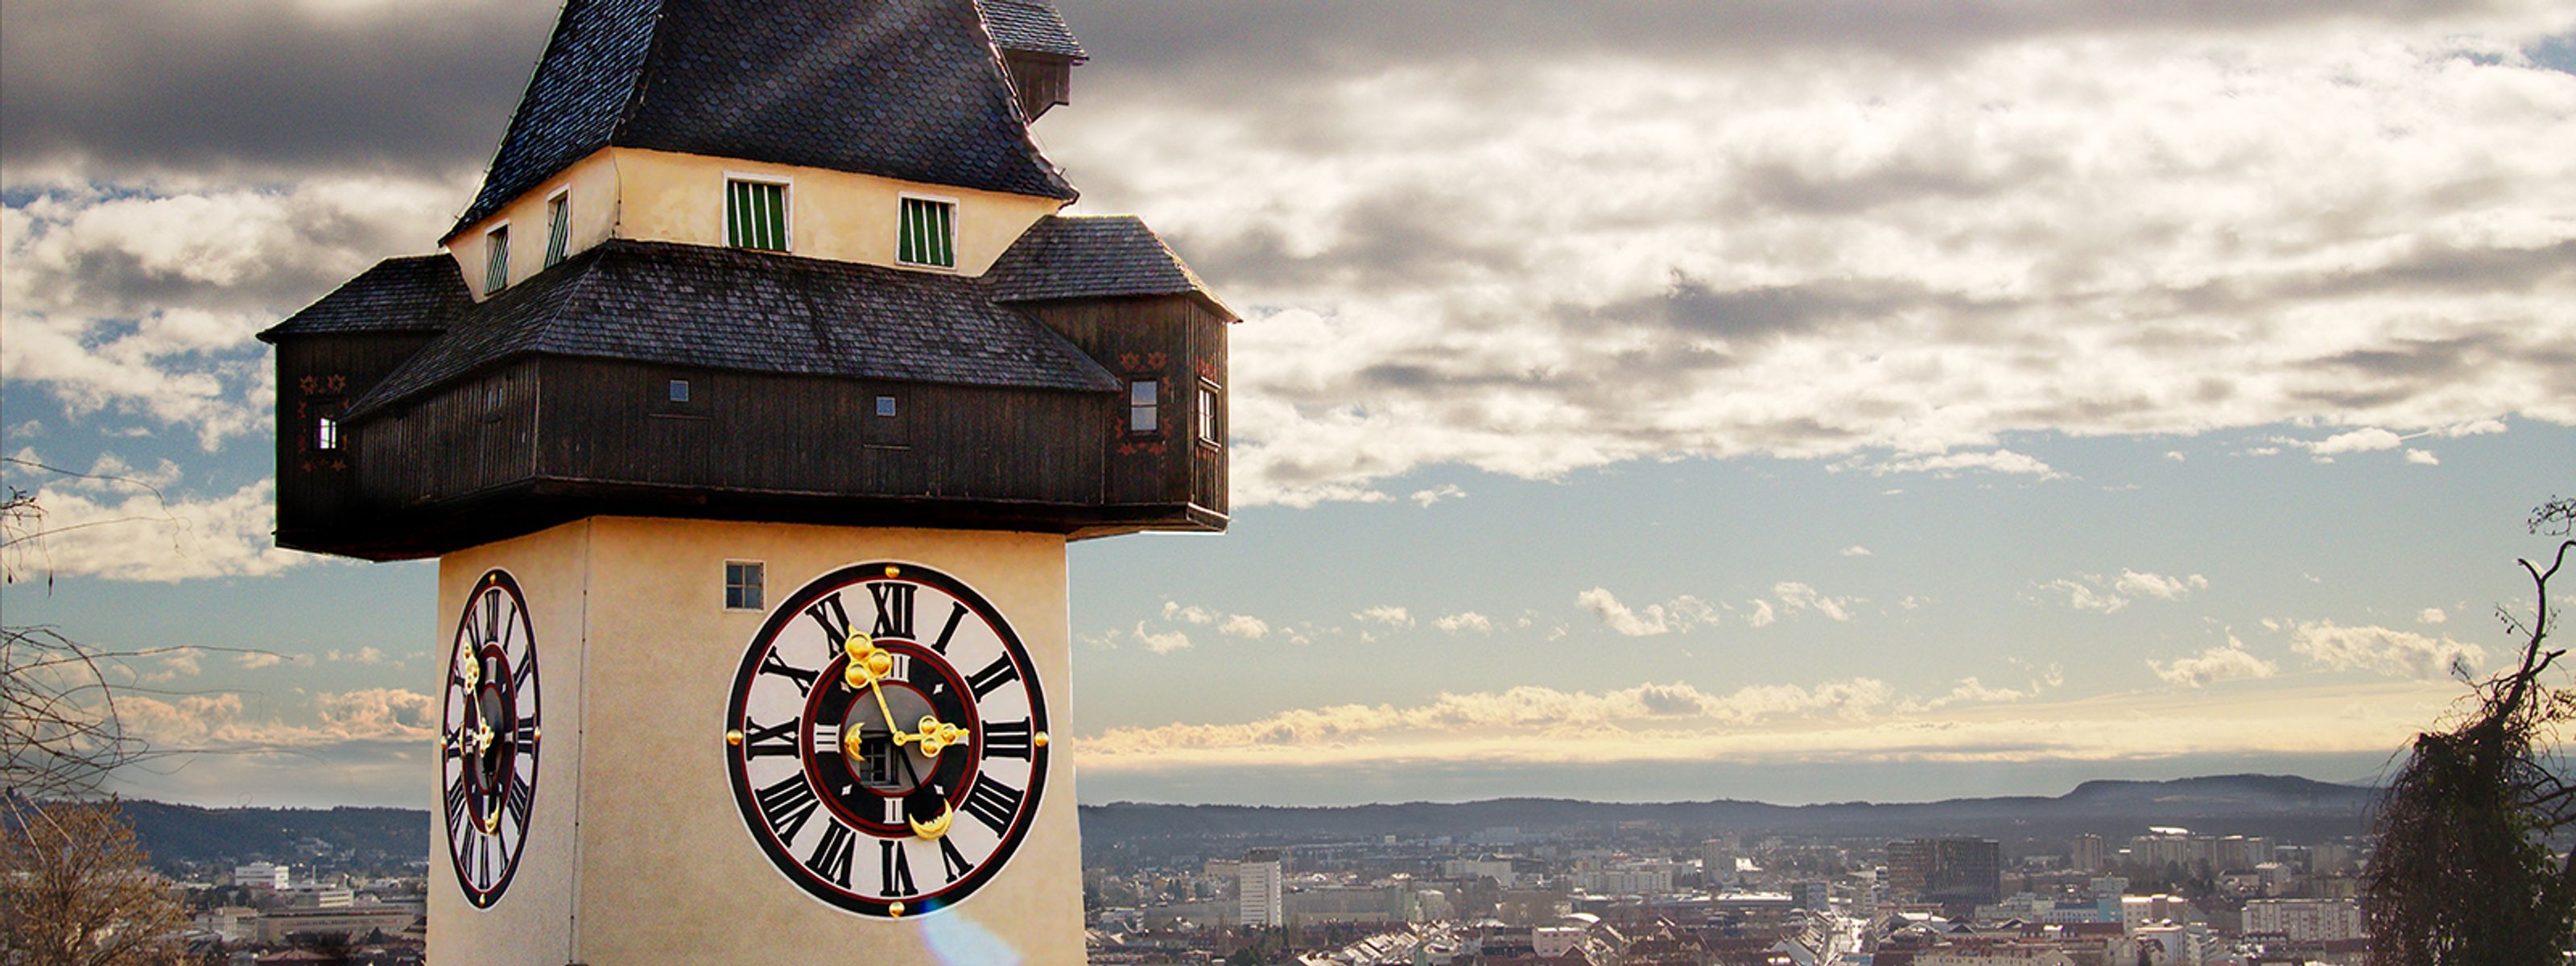 Graz Blick über die Altstadt vom Uhrturm auf dem Schlossberg 